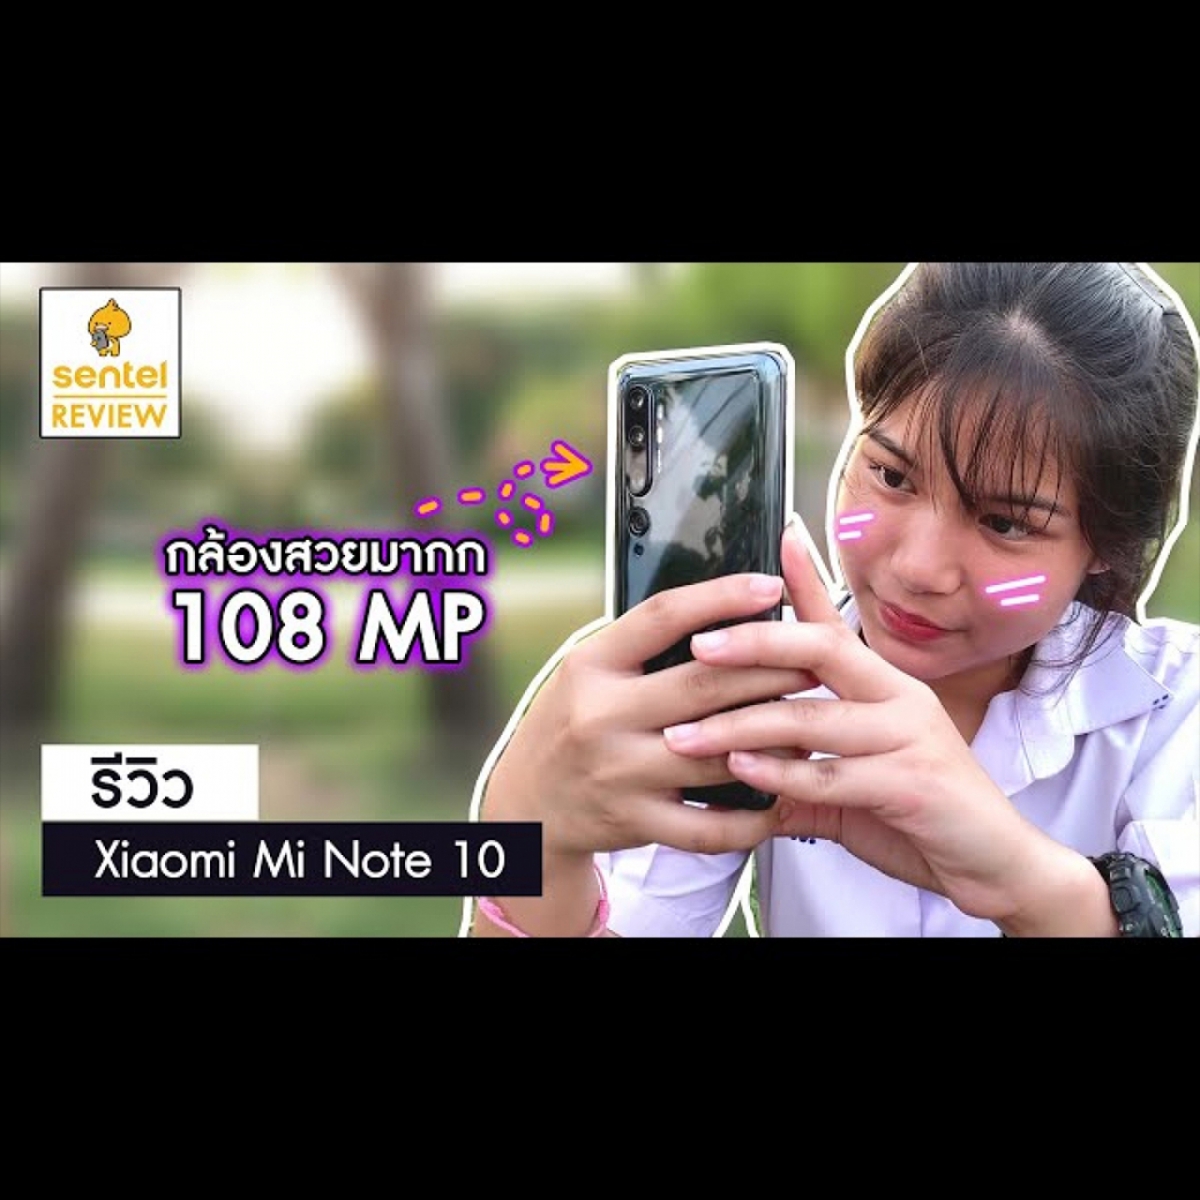 รีวิว Xiaomi Mi Note 10 | กล้อง 108 MP ความรู้สึกจากผู้ลองใช้!!